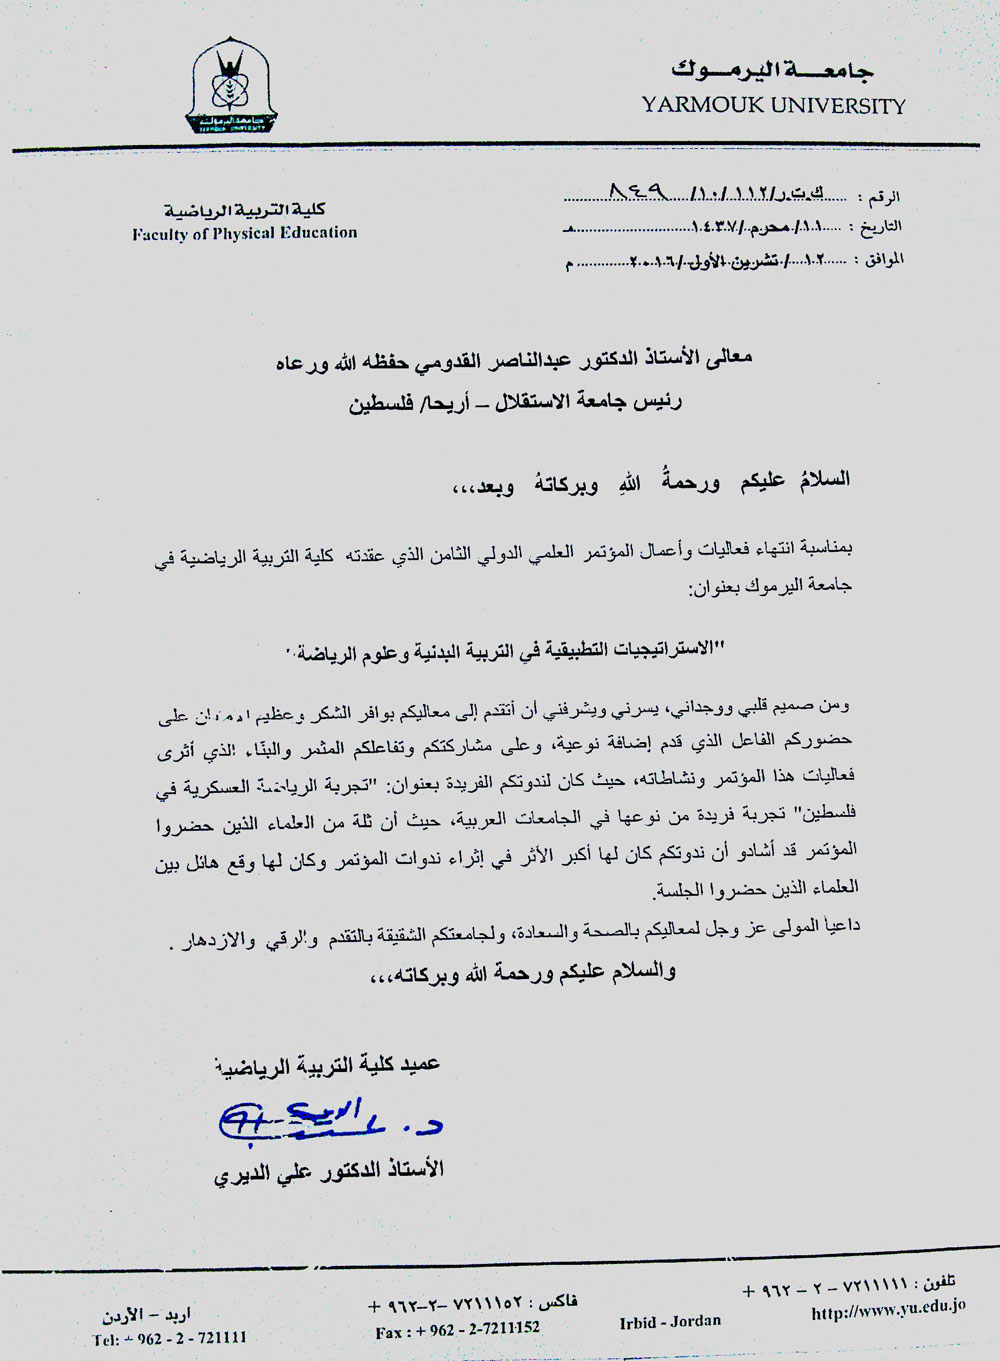 رسالة شكر رسمية بالعربي اجمل رسائل الشكر للمدراء المرأة العصرية